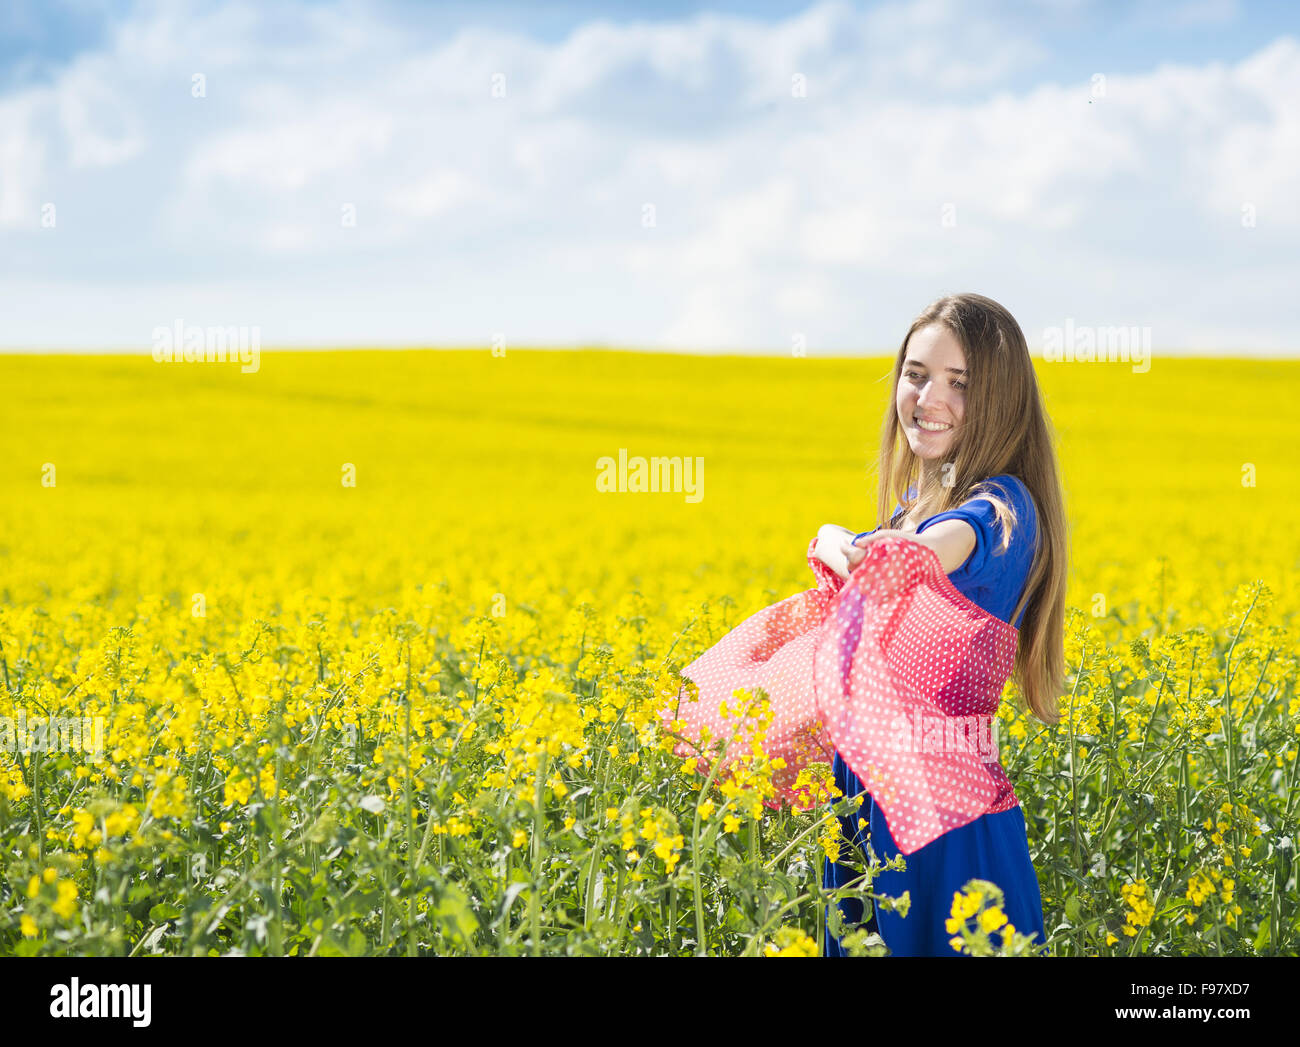 Fröhliches junges Mädchen im blauen Kleid und roten Schal in gelben Raps Feld Freizeit genießen Stockfoto